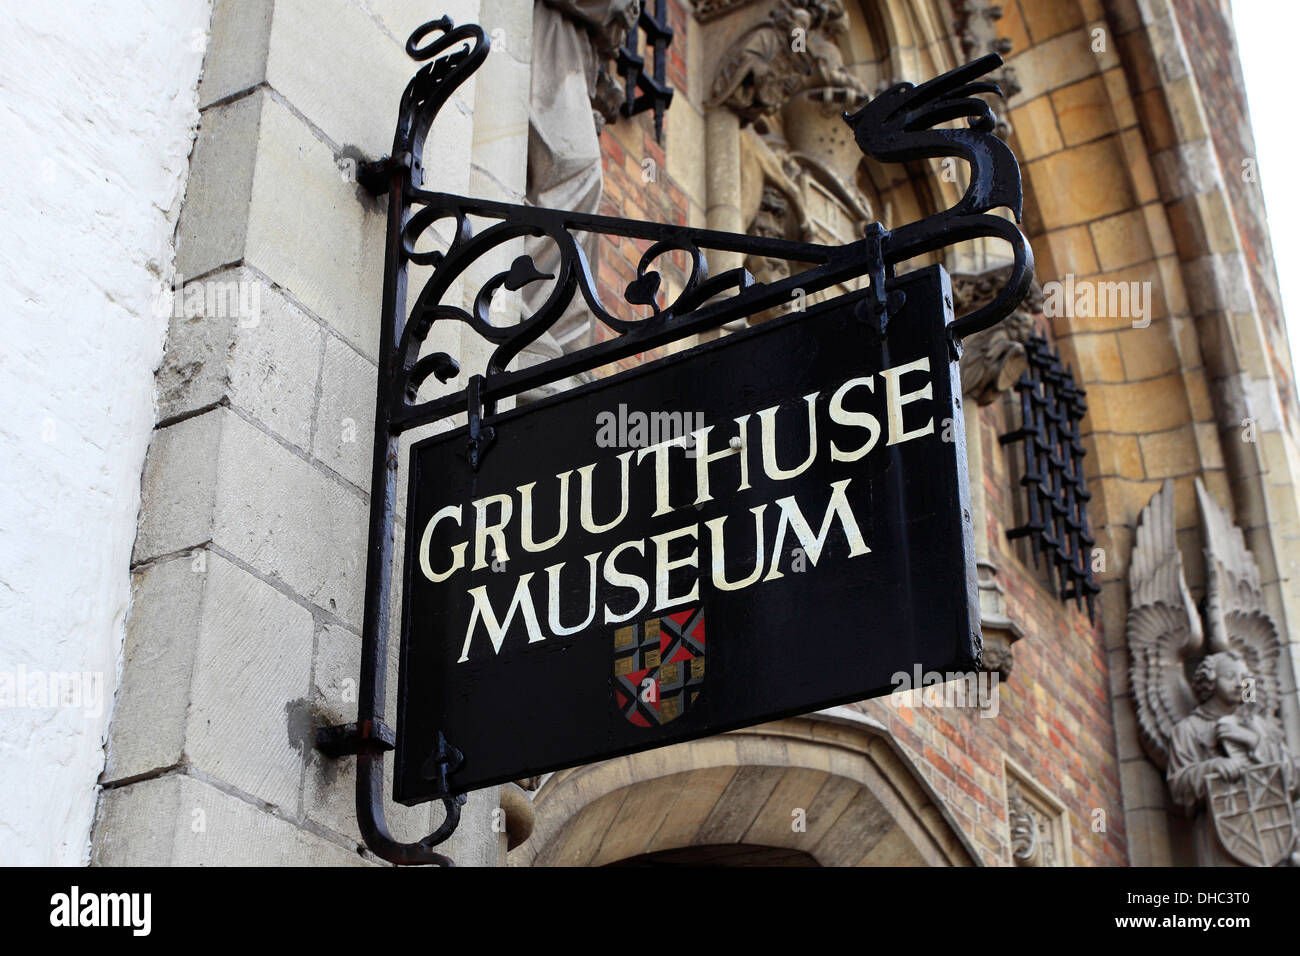 Le musée Gruuthuse, Ville de Bruges, Flandre occidentale, région flamande de Belgique. Banque D'Images